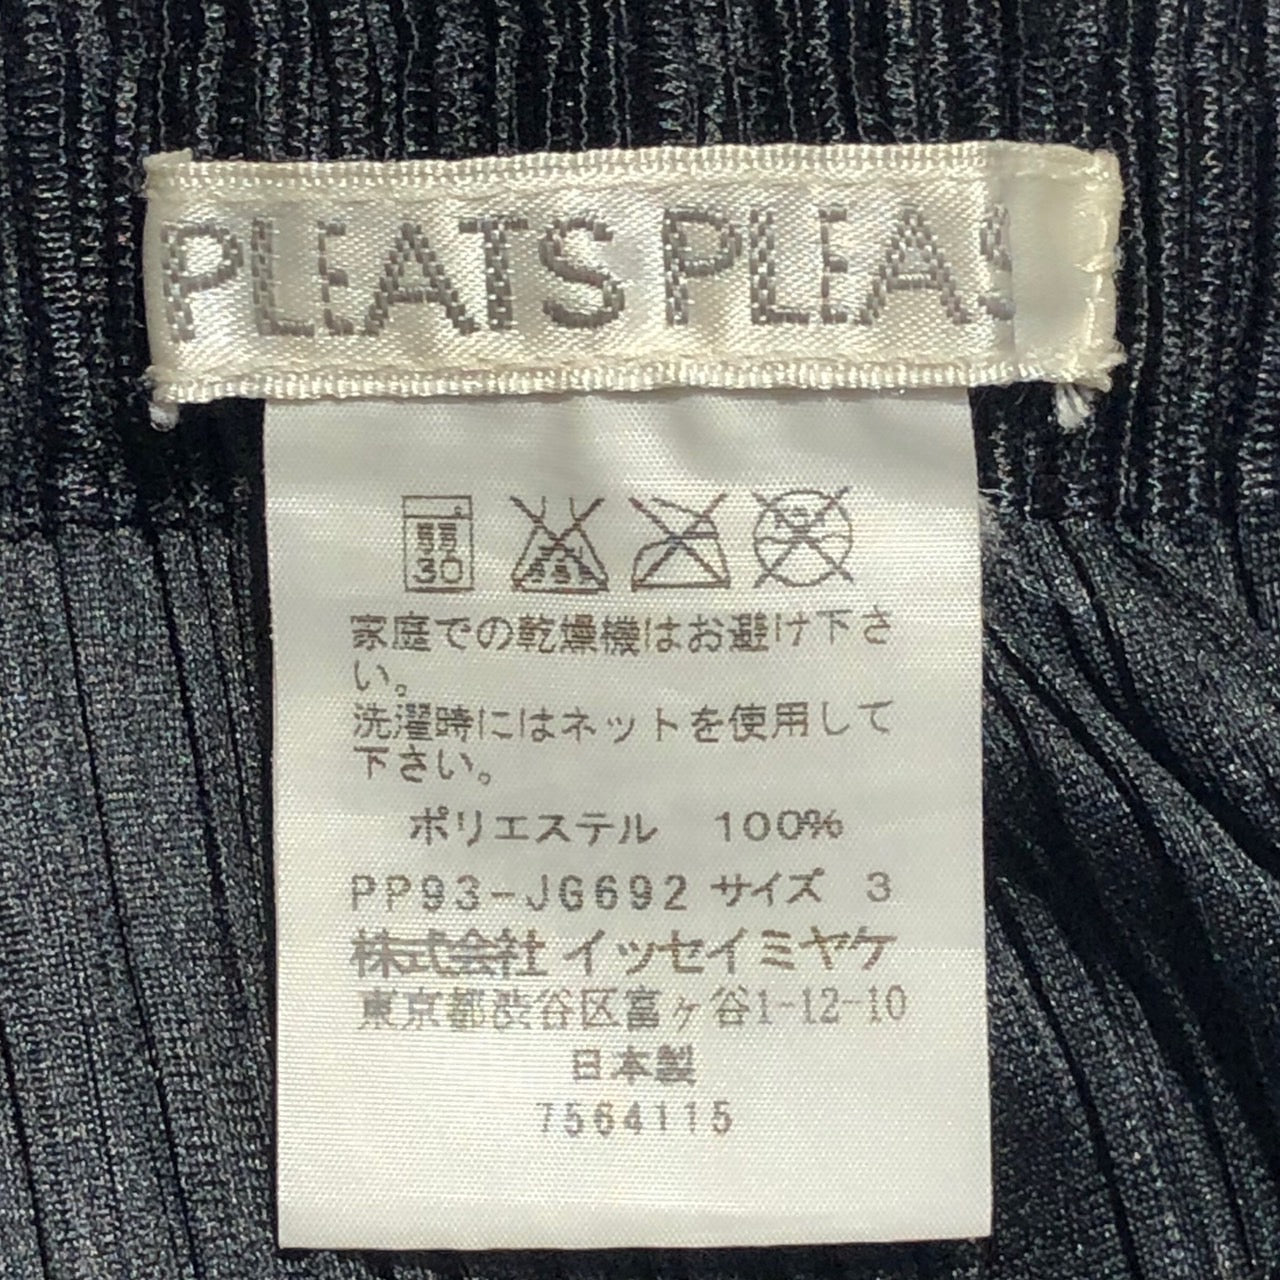 PLEATS PLEASE(プリーツプリーズ) 09AWバイカラー切替プリーツスカート PP93-JG692 3(Lサイズ程度) ブラック